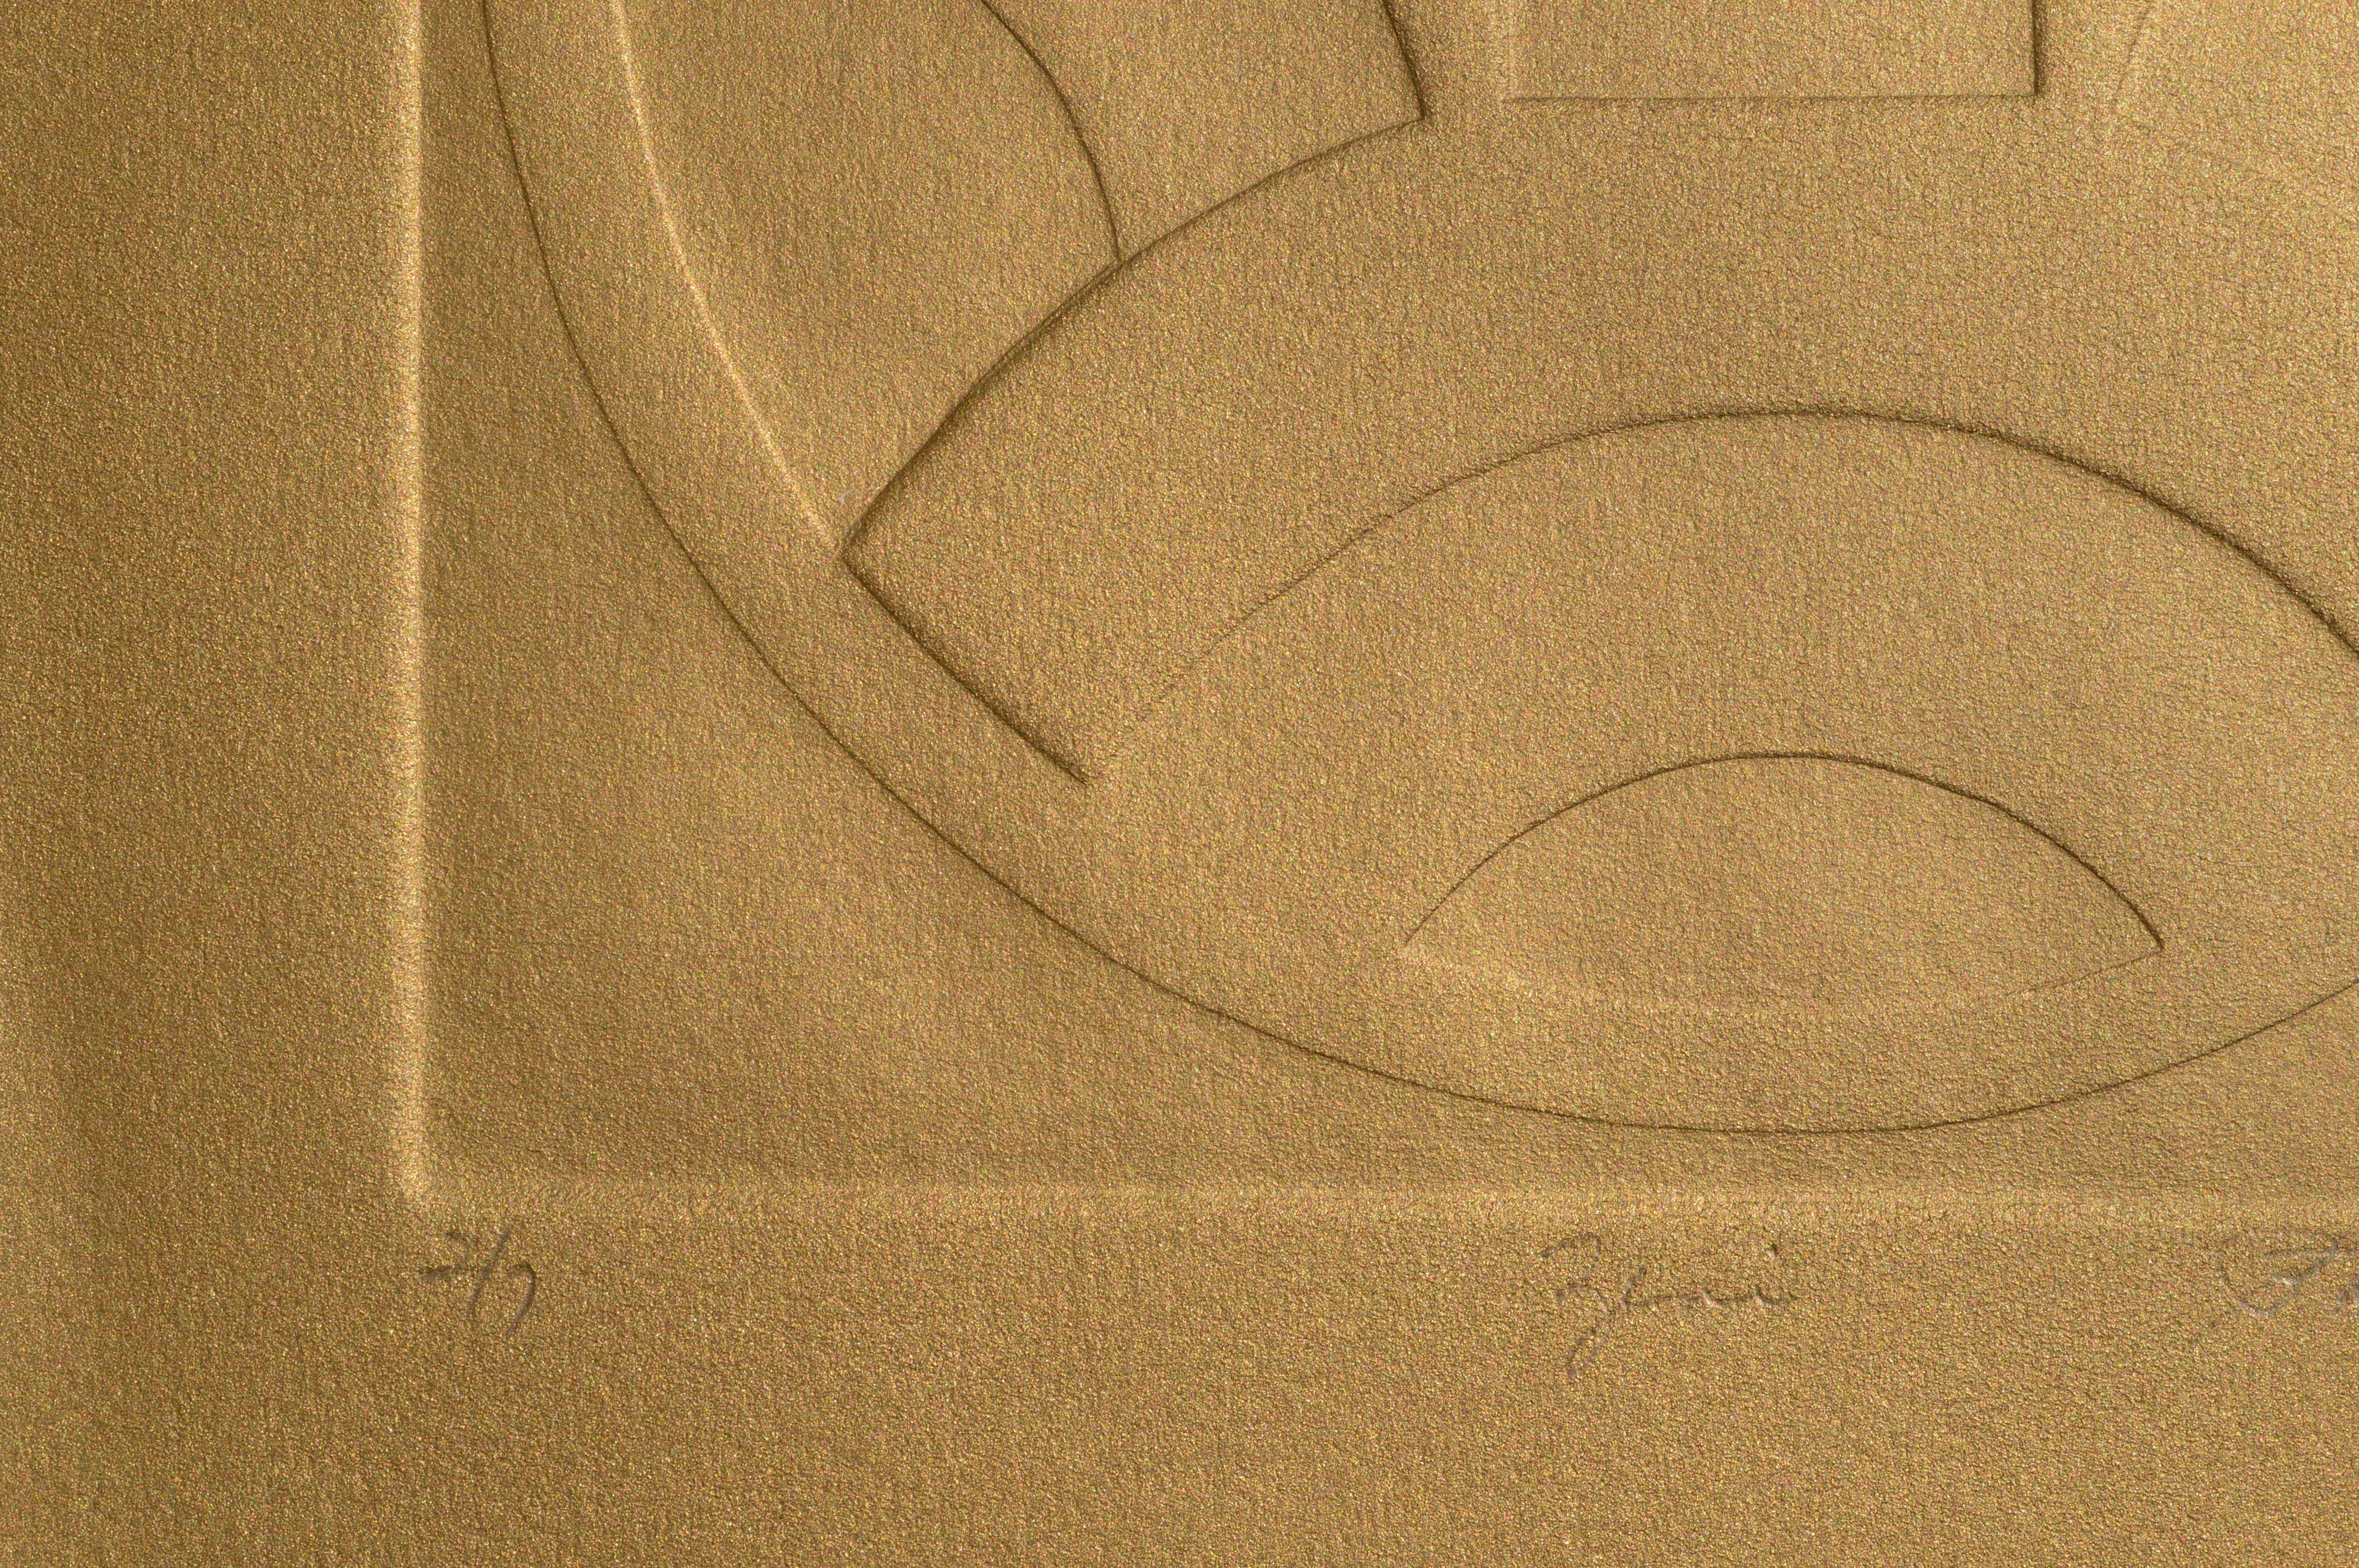 Zarte, geprägte Komposition von Patricia A. Pearce (Amerikanerin, geb. 1948). Dieses Stück ist in einem Bronzeton lackiert, der je nach Lichtquelle und Winkel schimmert und sich verändert. Nummeriert, betitelt und signiert (